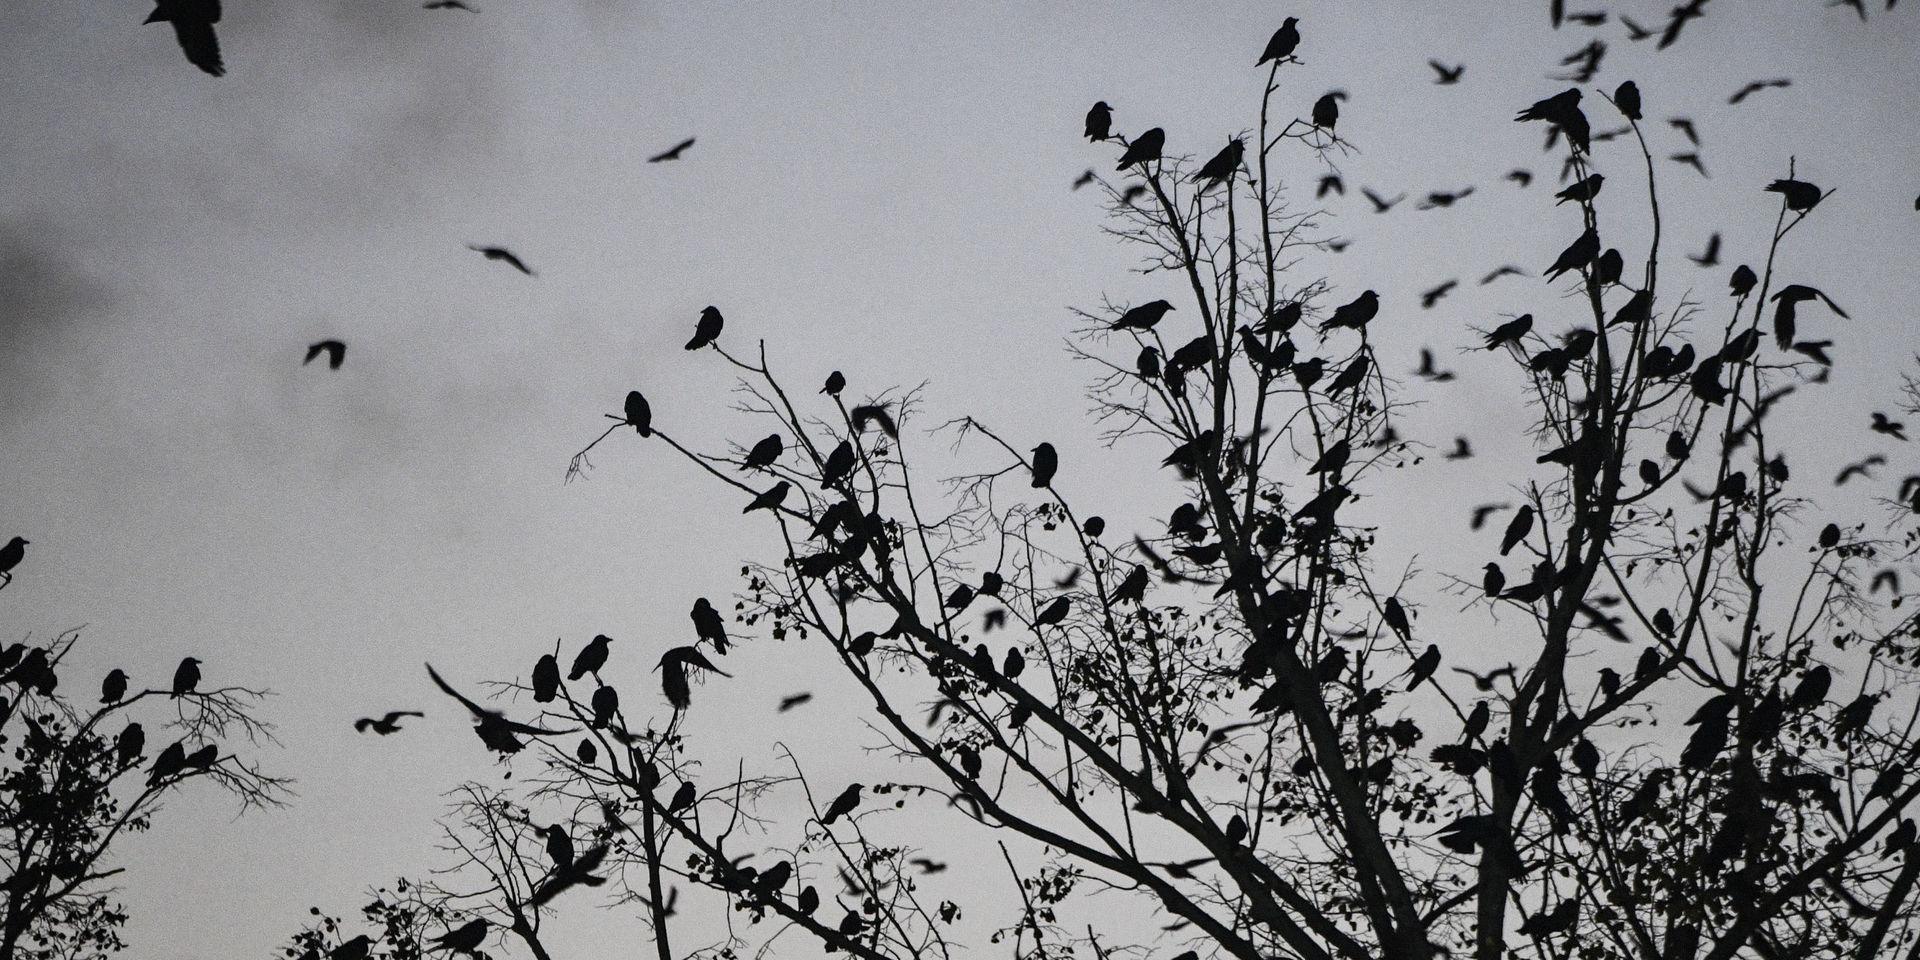 MALMÖ 20181018
Fåglar i silhuett i ett träd en höstkväll.
Foto: Johan Nilsson / TT / kod 50090